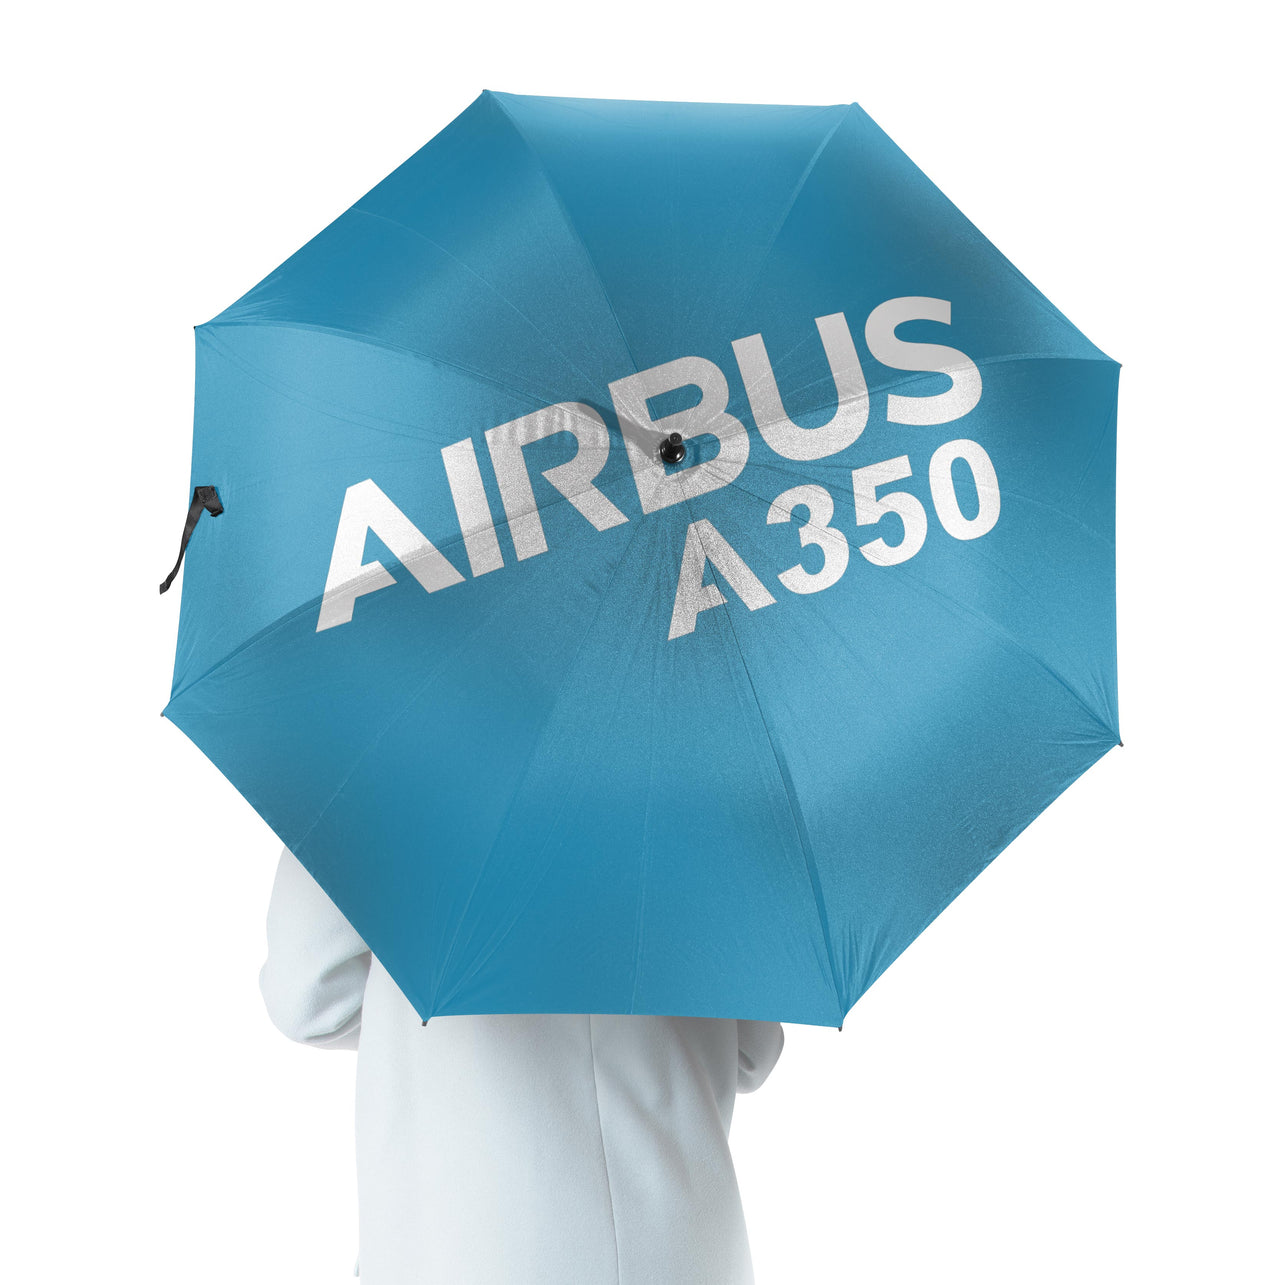 Airbus A350 & Text Designed Umbrella